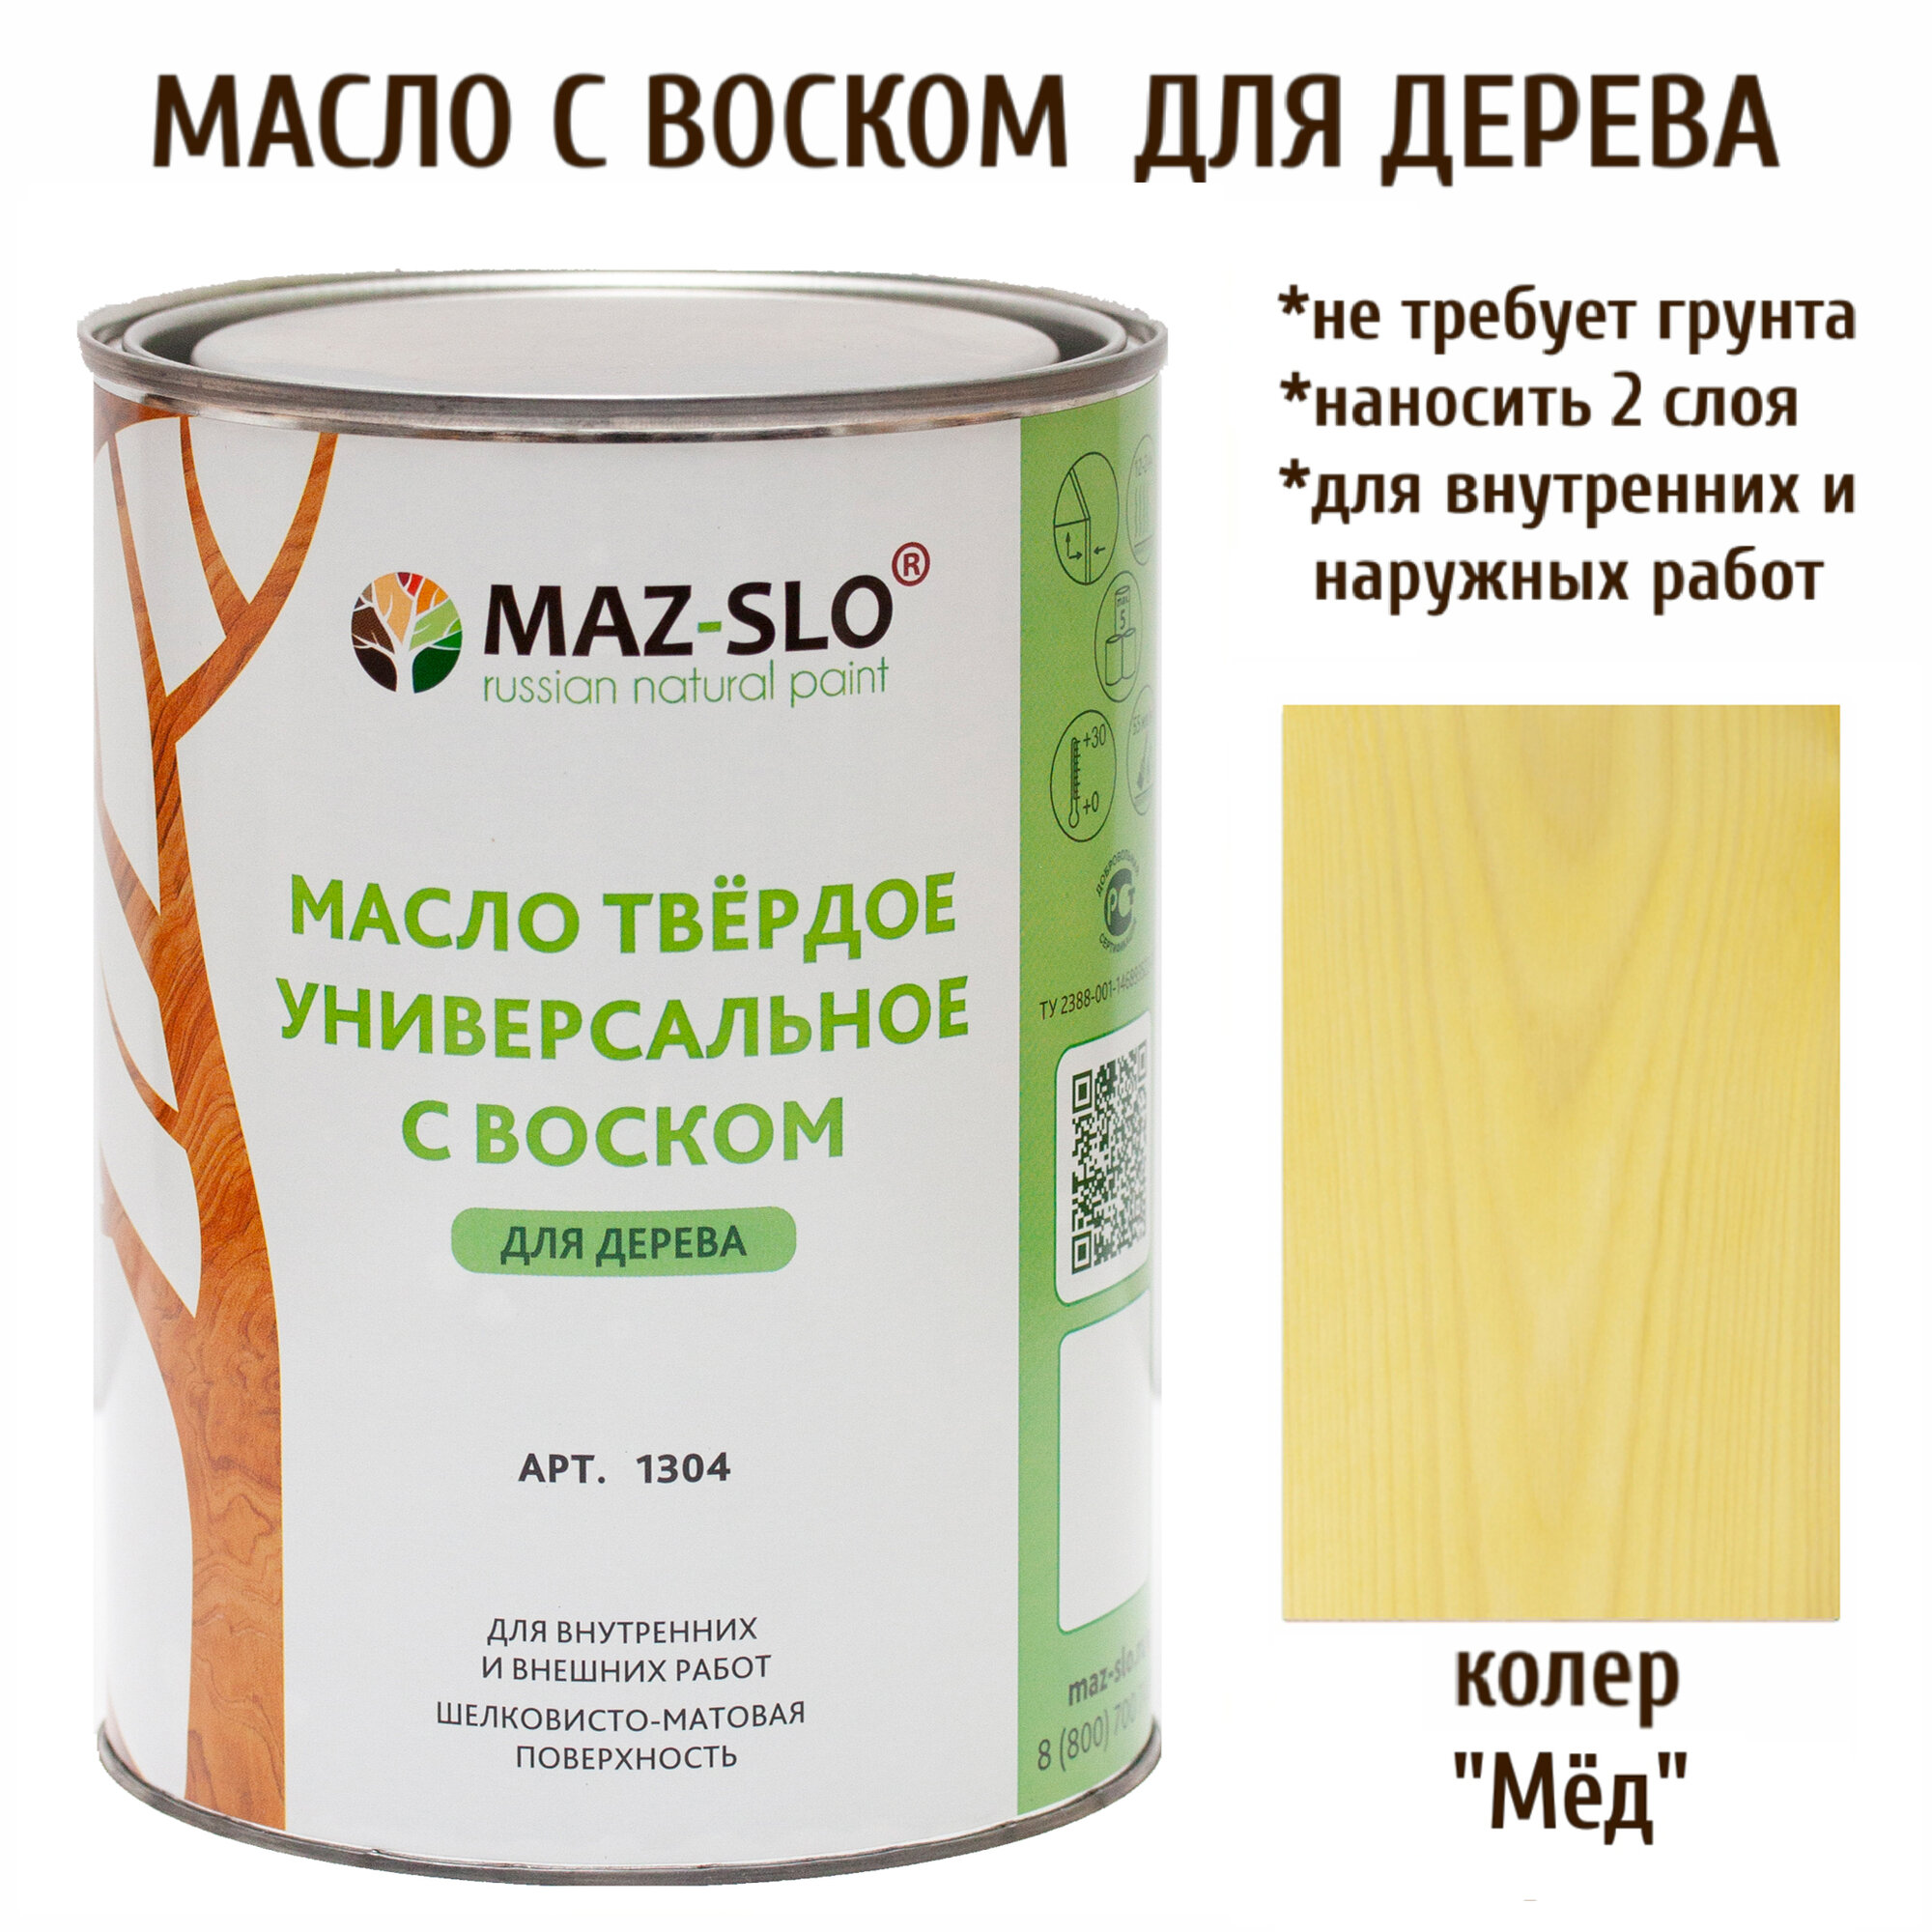 Масло твердое универсальное с воском Maz-slo цвет Мёд